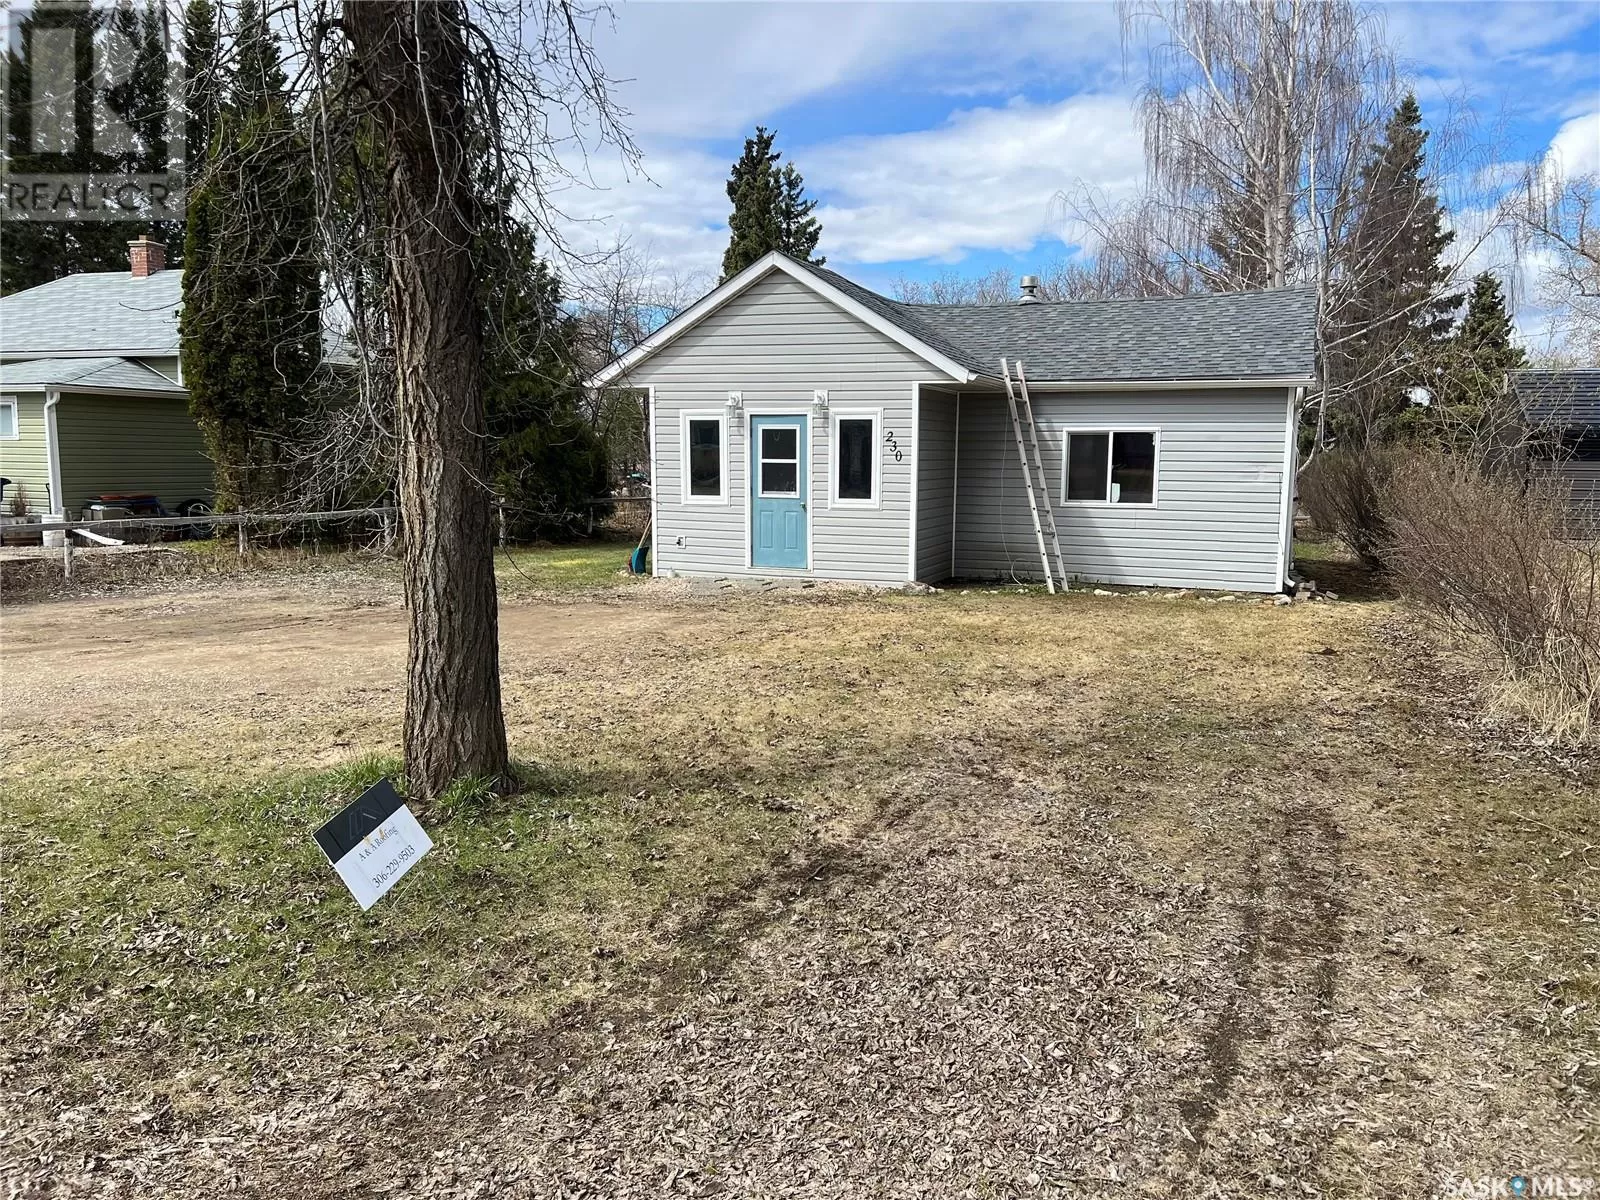 House for rent: 230 Oak Street, Porcupine Plain, Saskatchewan S0E 1H0